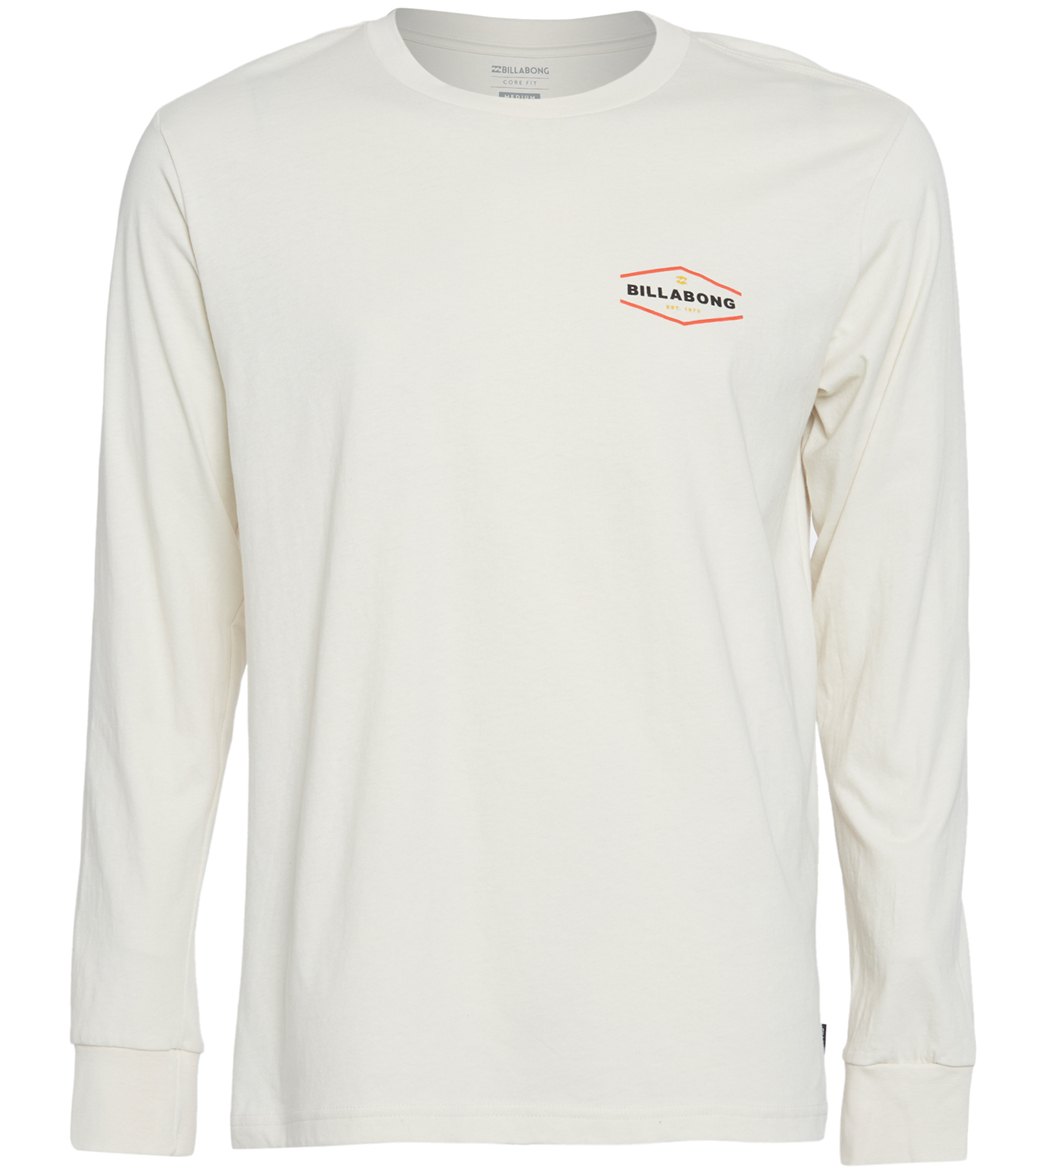 Billabong Vista Long Sleeve T-Shirt at SwimOutlet.com